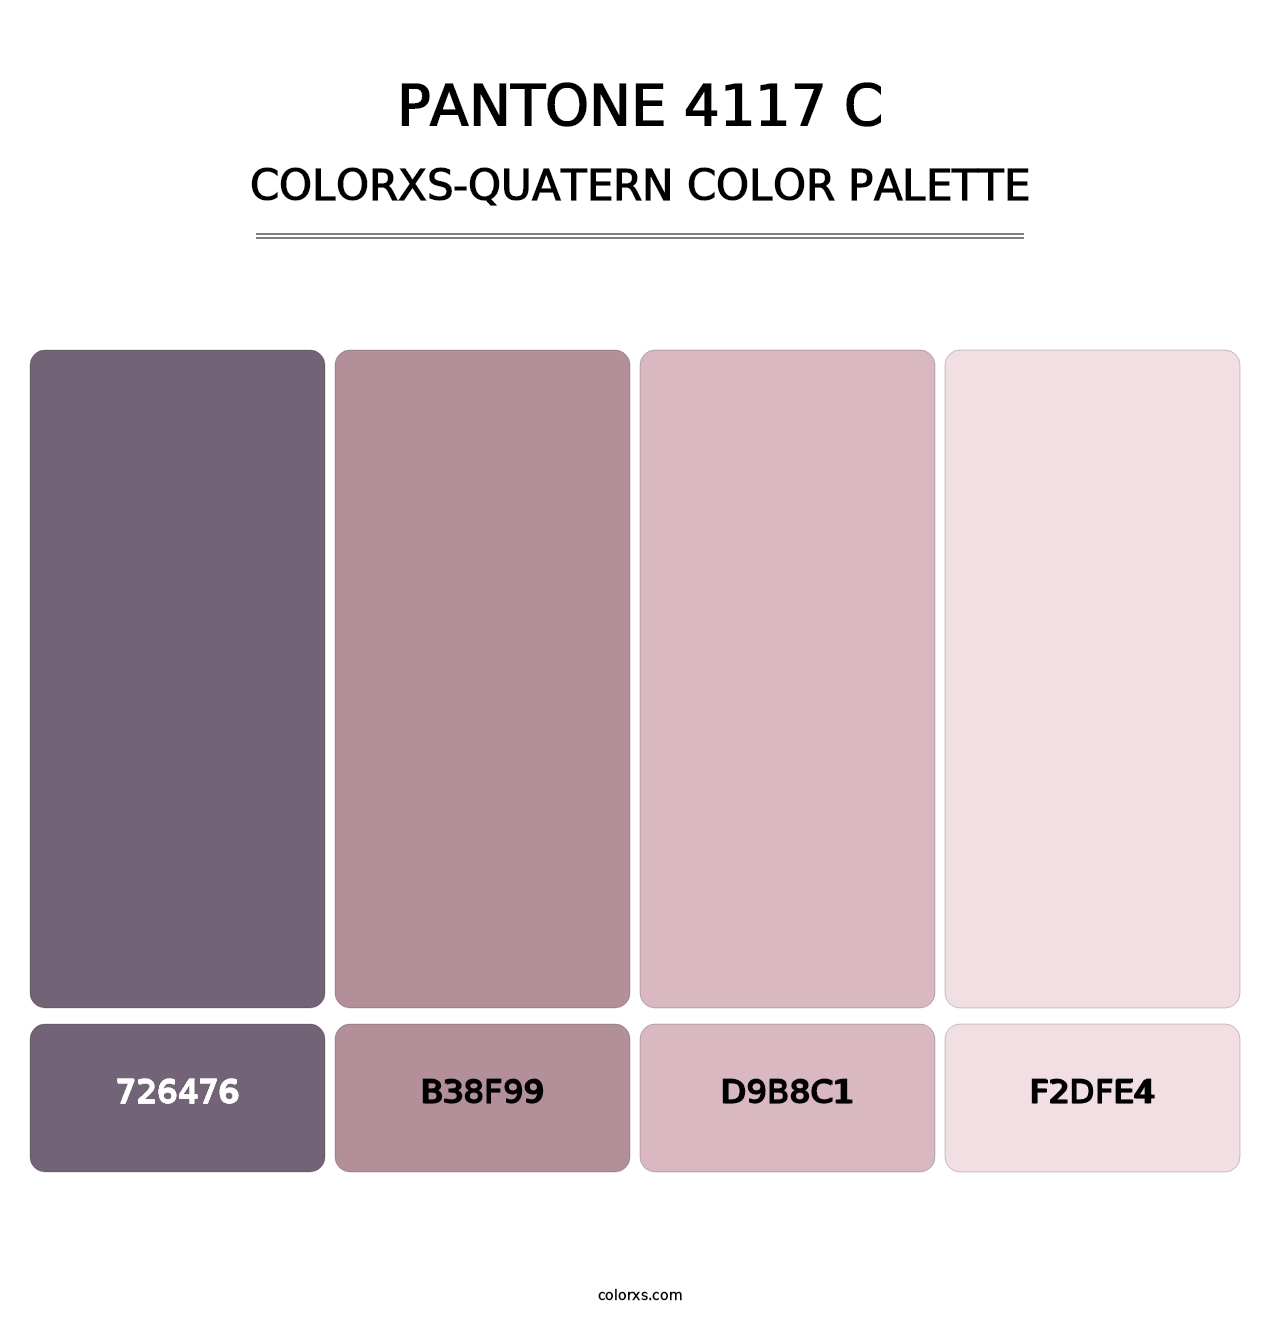 PANTONE 4117 C - Colorxs Quatern Palette